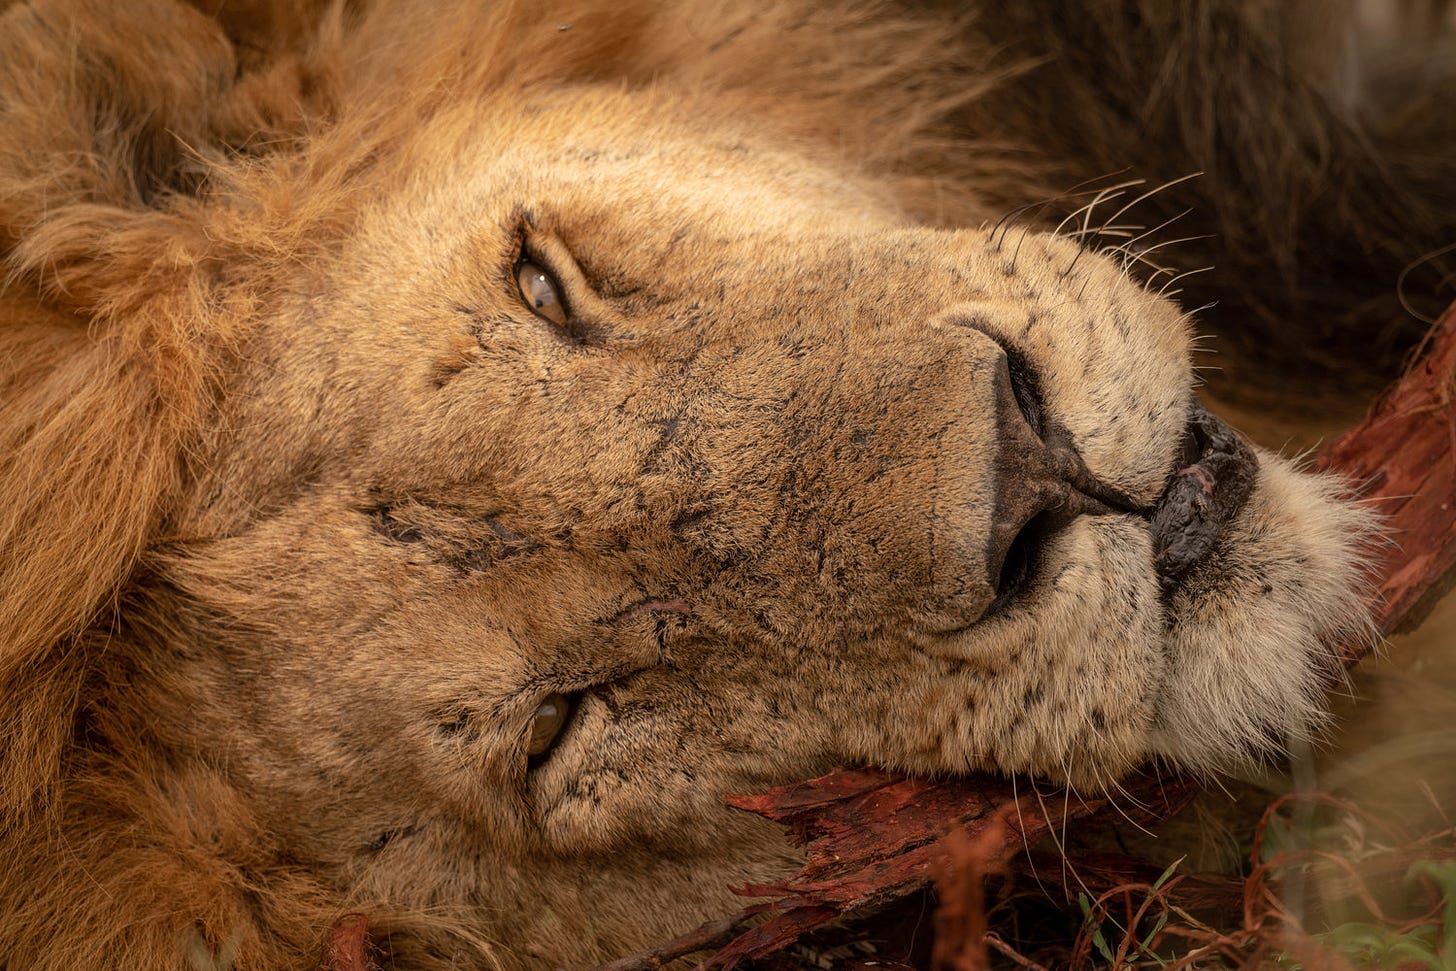 Simba, aka a male lion